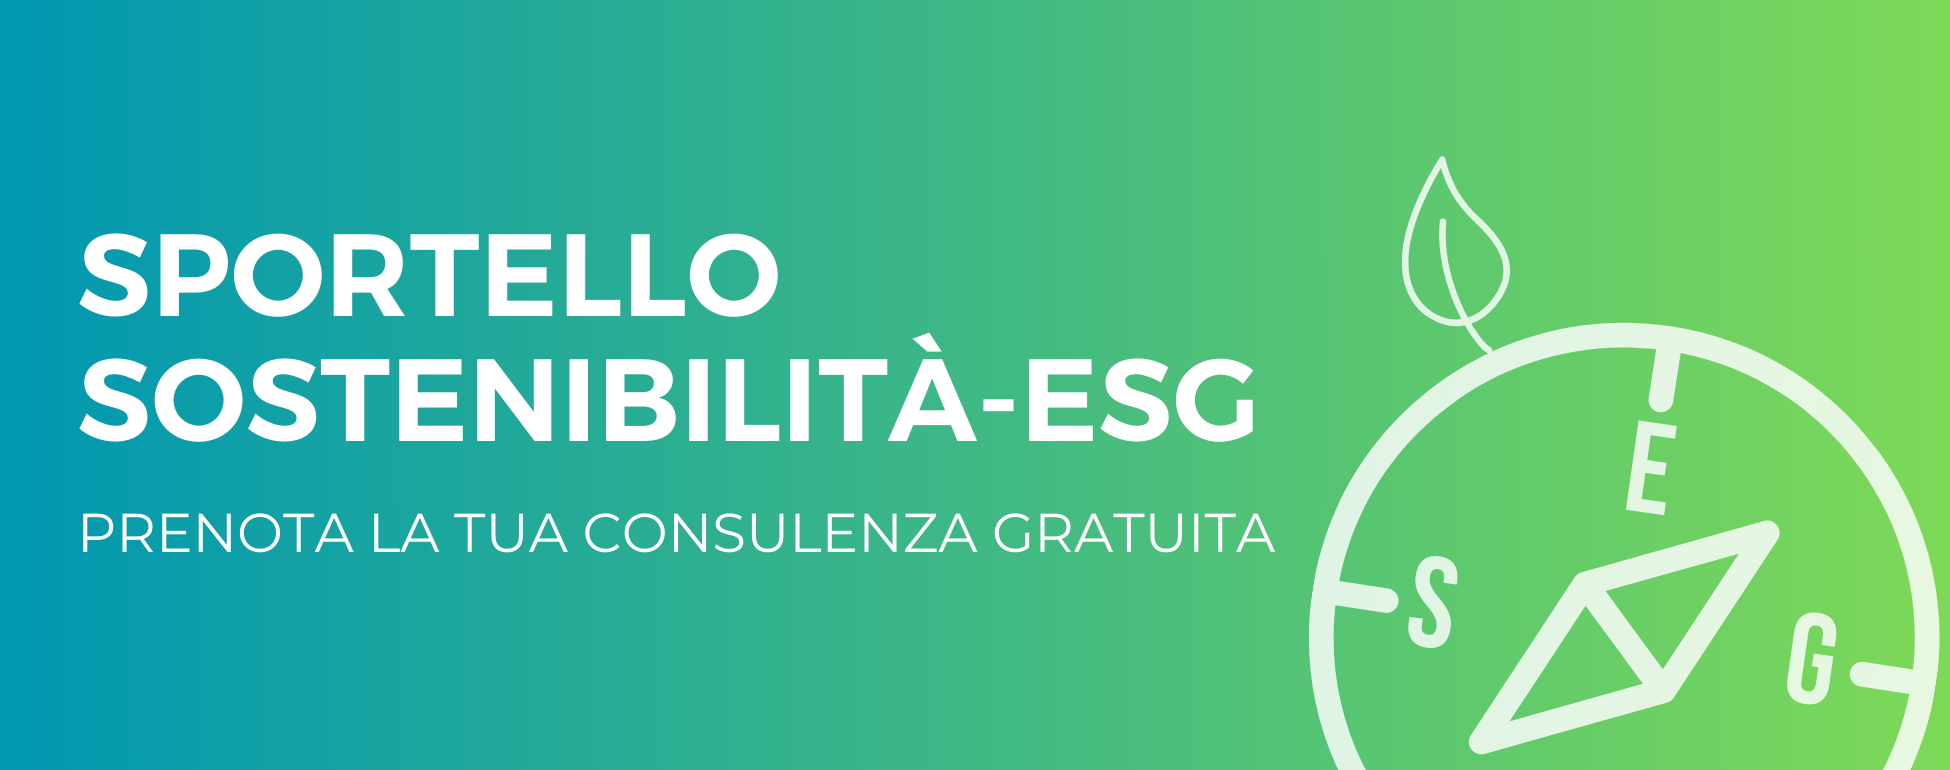 Fascione_sportello sostenibilità-ESG